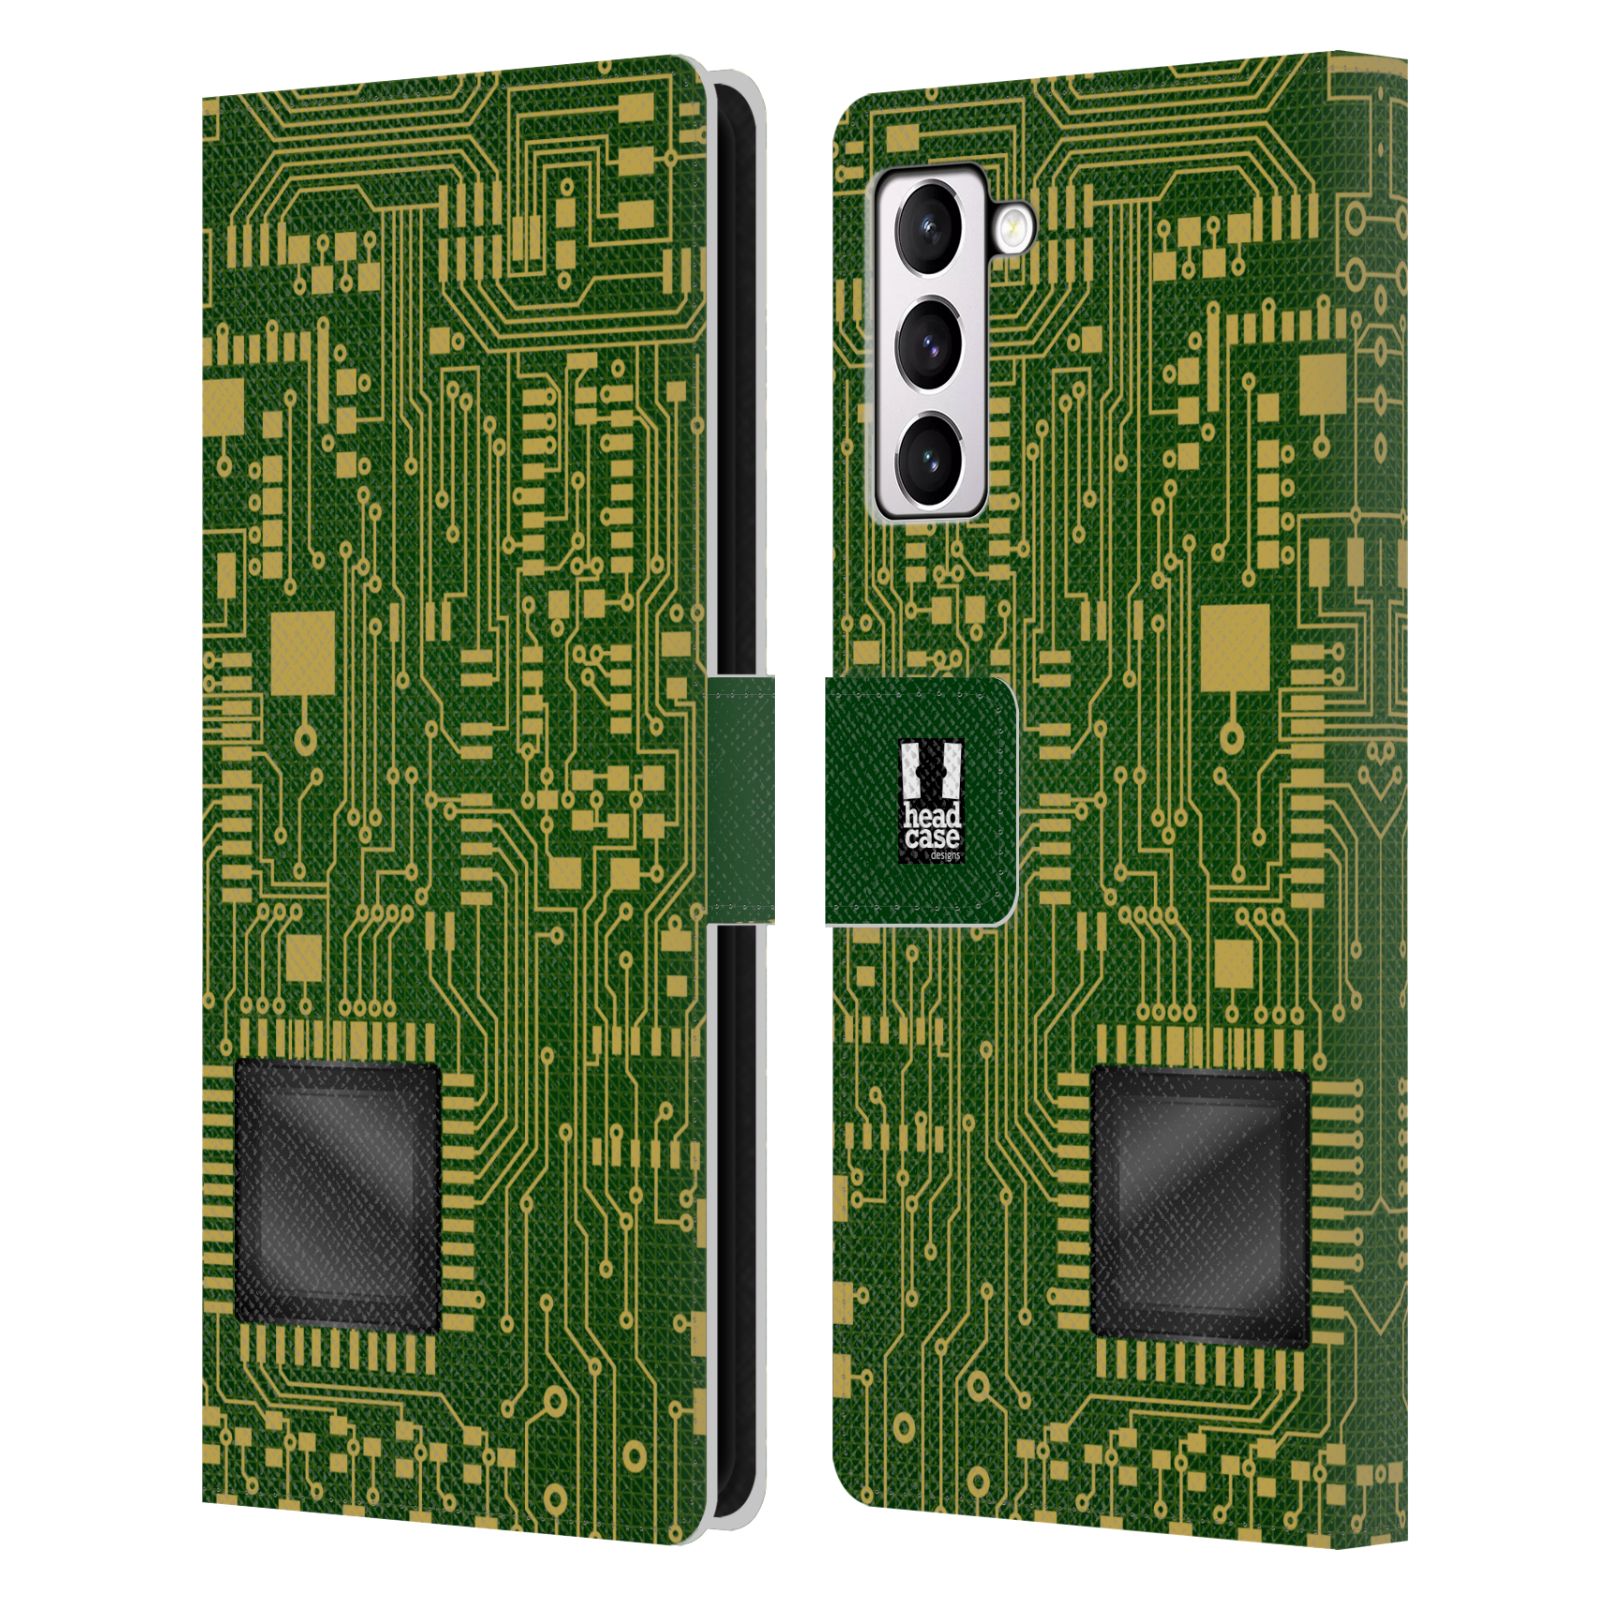 Pouzdro HEAD CASE na mobil Samsung Galaxy S21+ 5G / S21 PLUS 5G počítač základní deska zelená barva velký čip